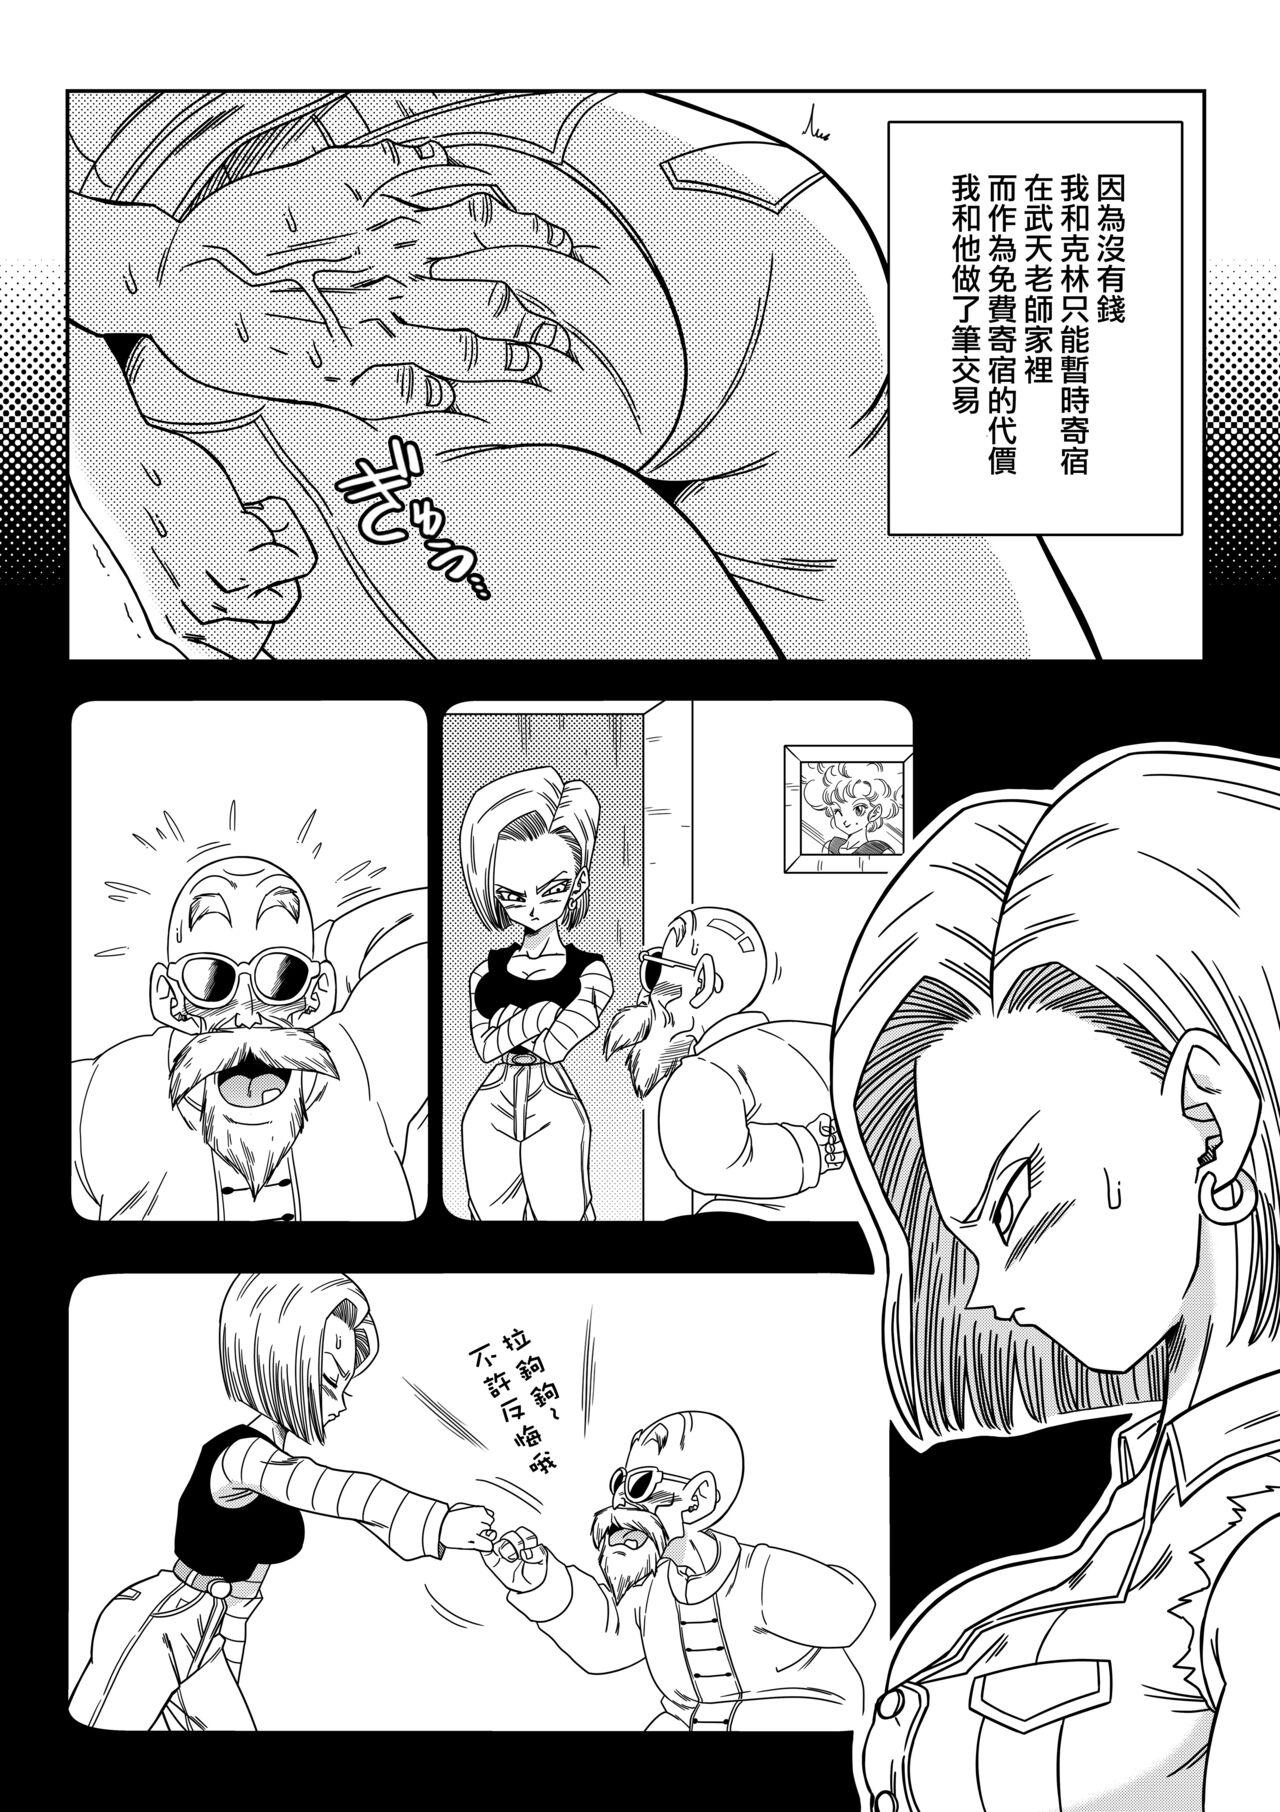 Submissive 18-gou vs Kame Sennin - Dragon ball z Toilet - Page 3